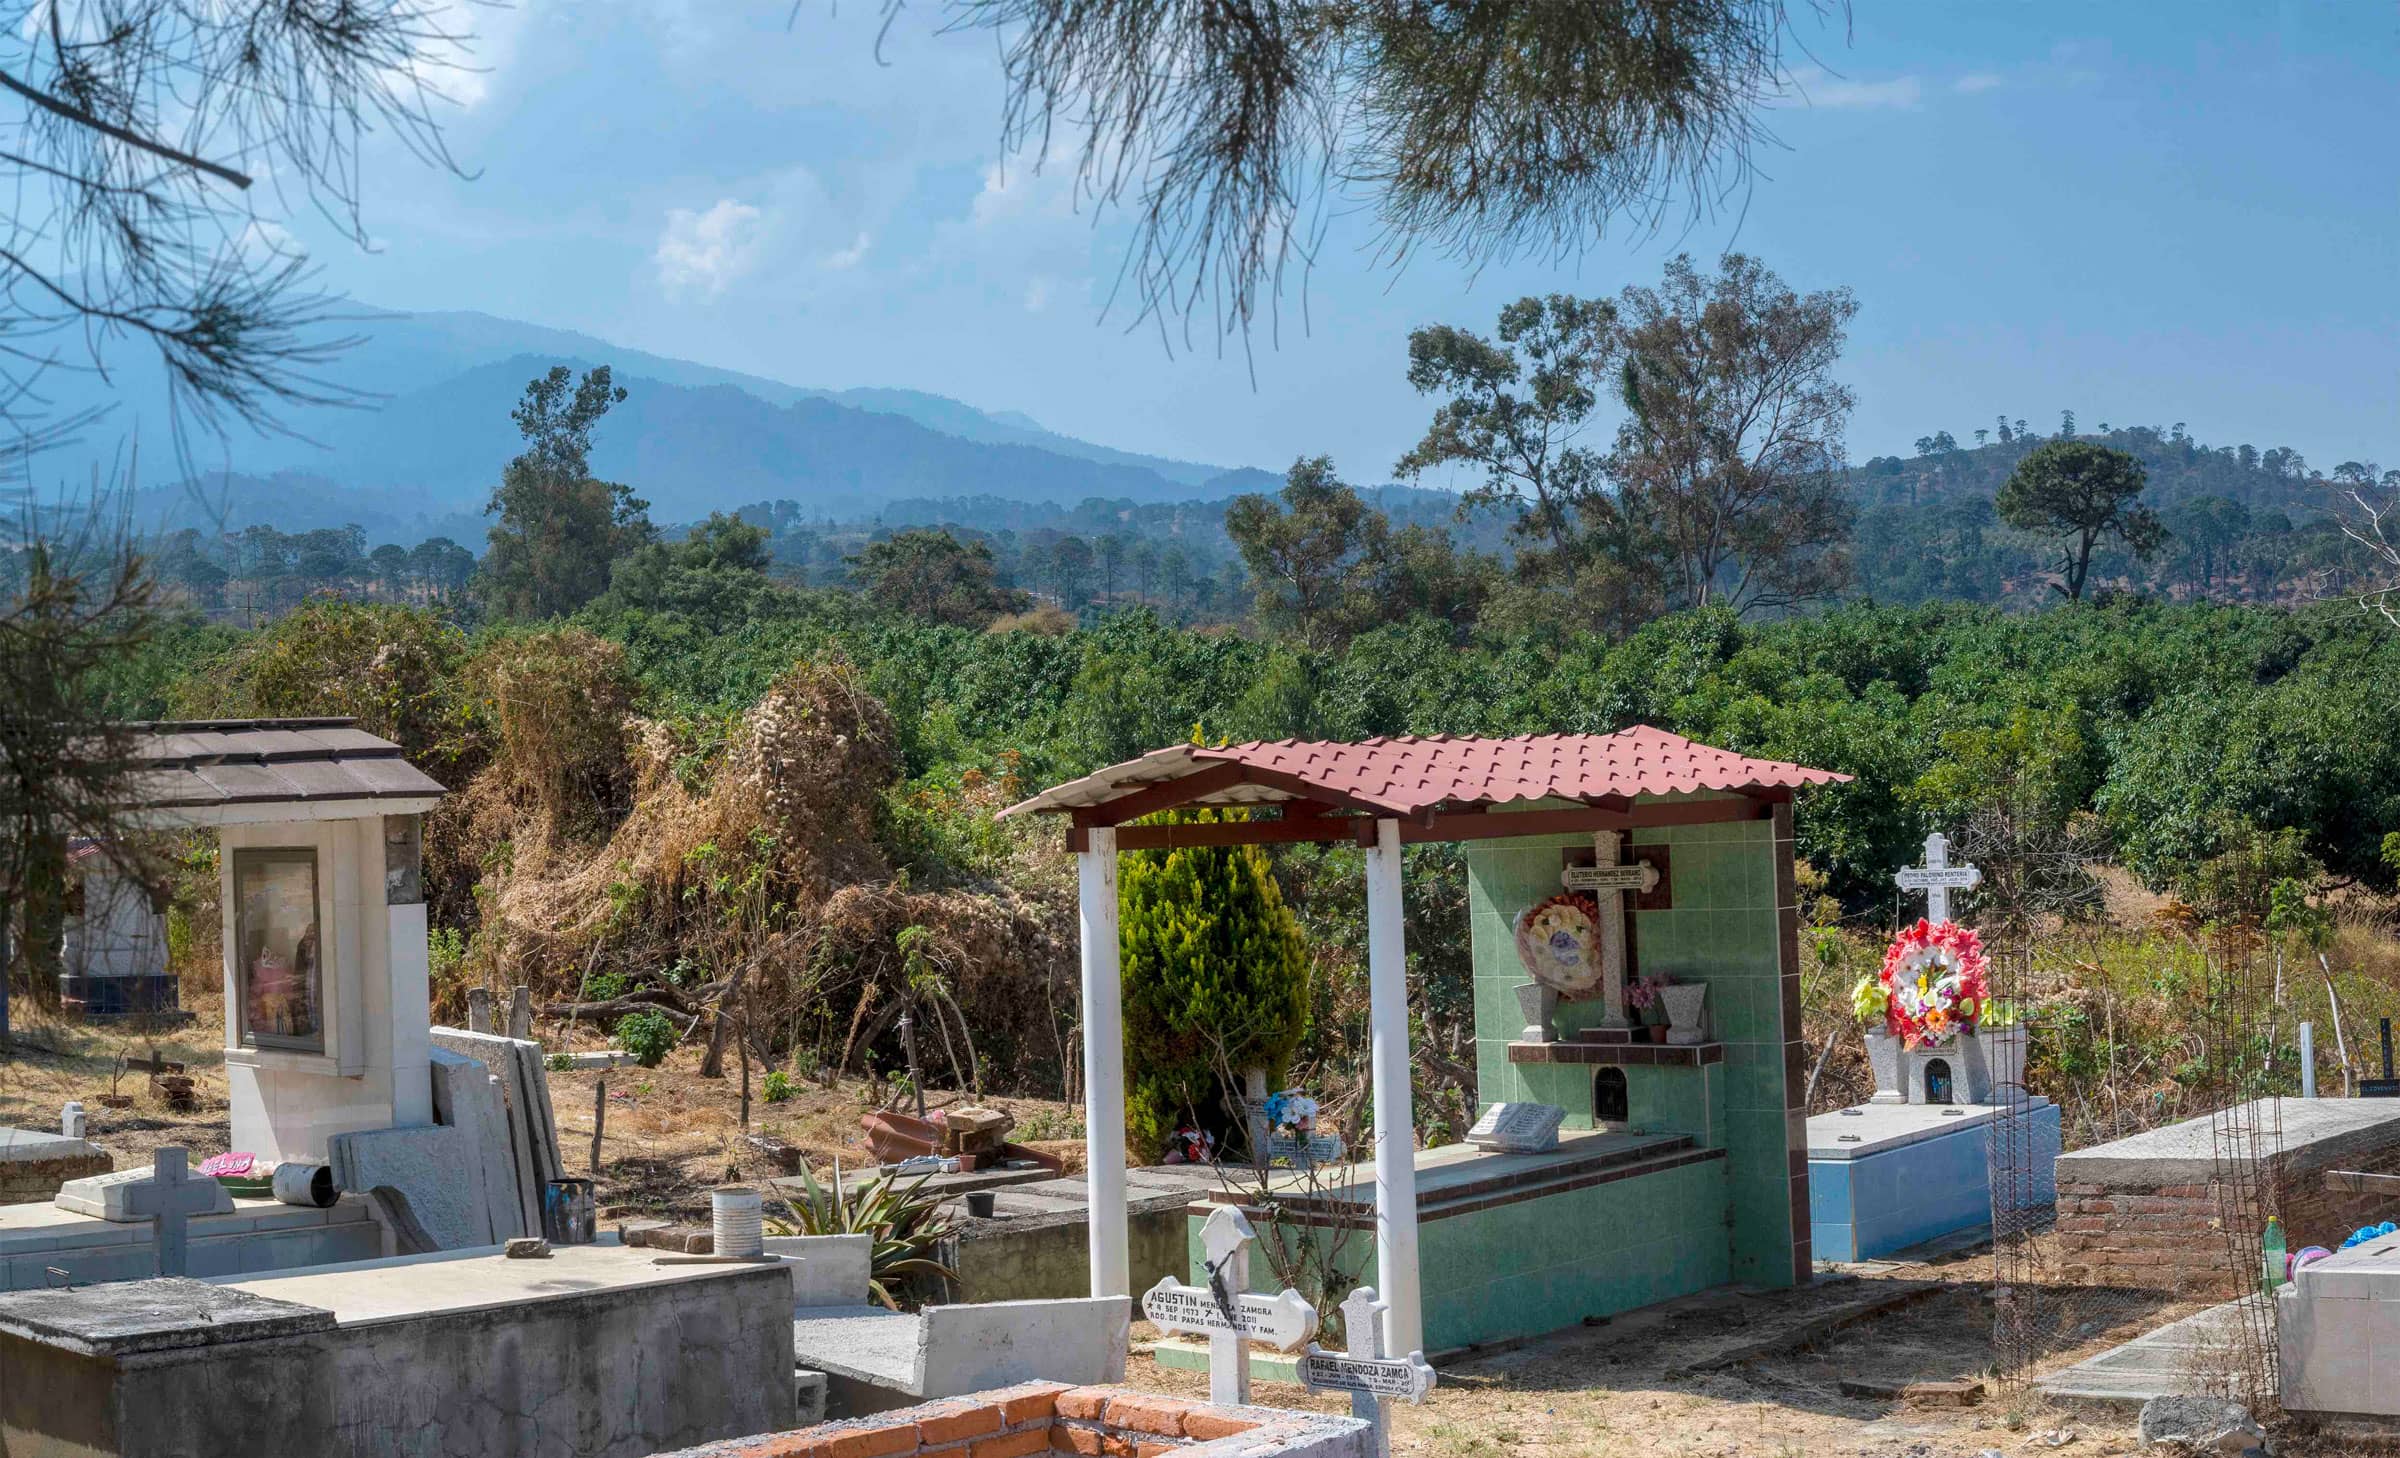 Árboles de aguacate casi dentro del cementerio de la comunidad El Jazmín, municipio de San Gabriel. Foto: Abraham Pérez.